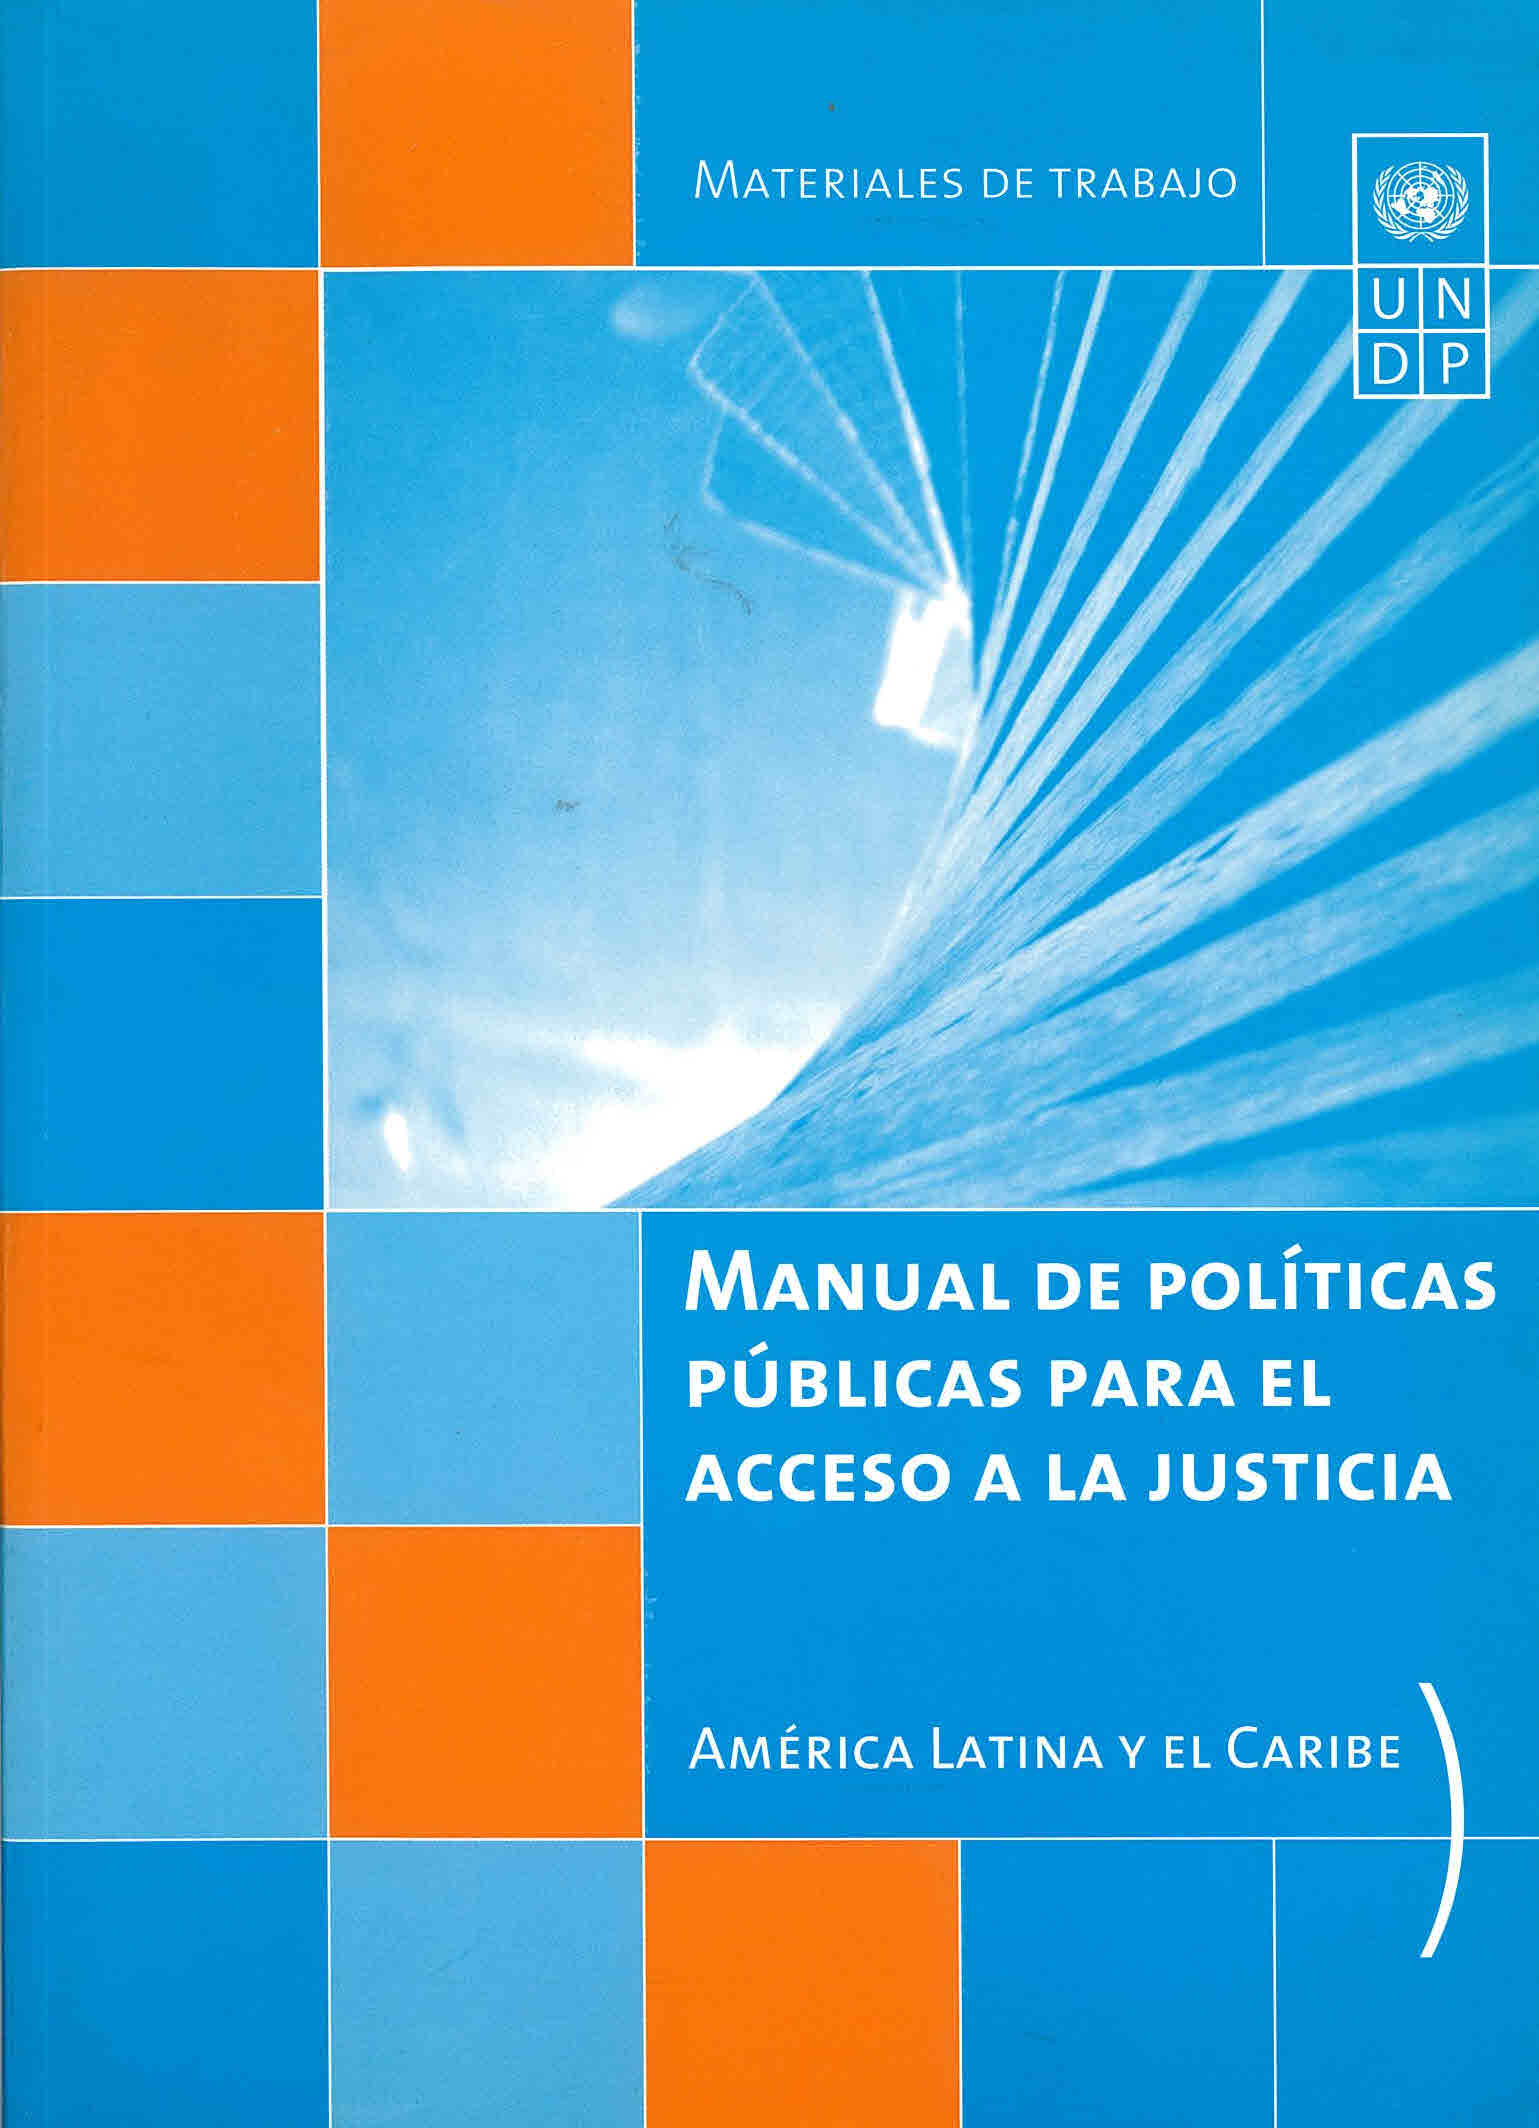 Manual de políticas públicas para el acceso a la justicia